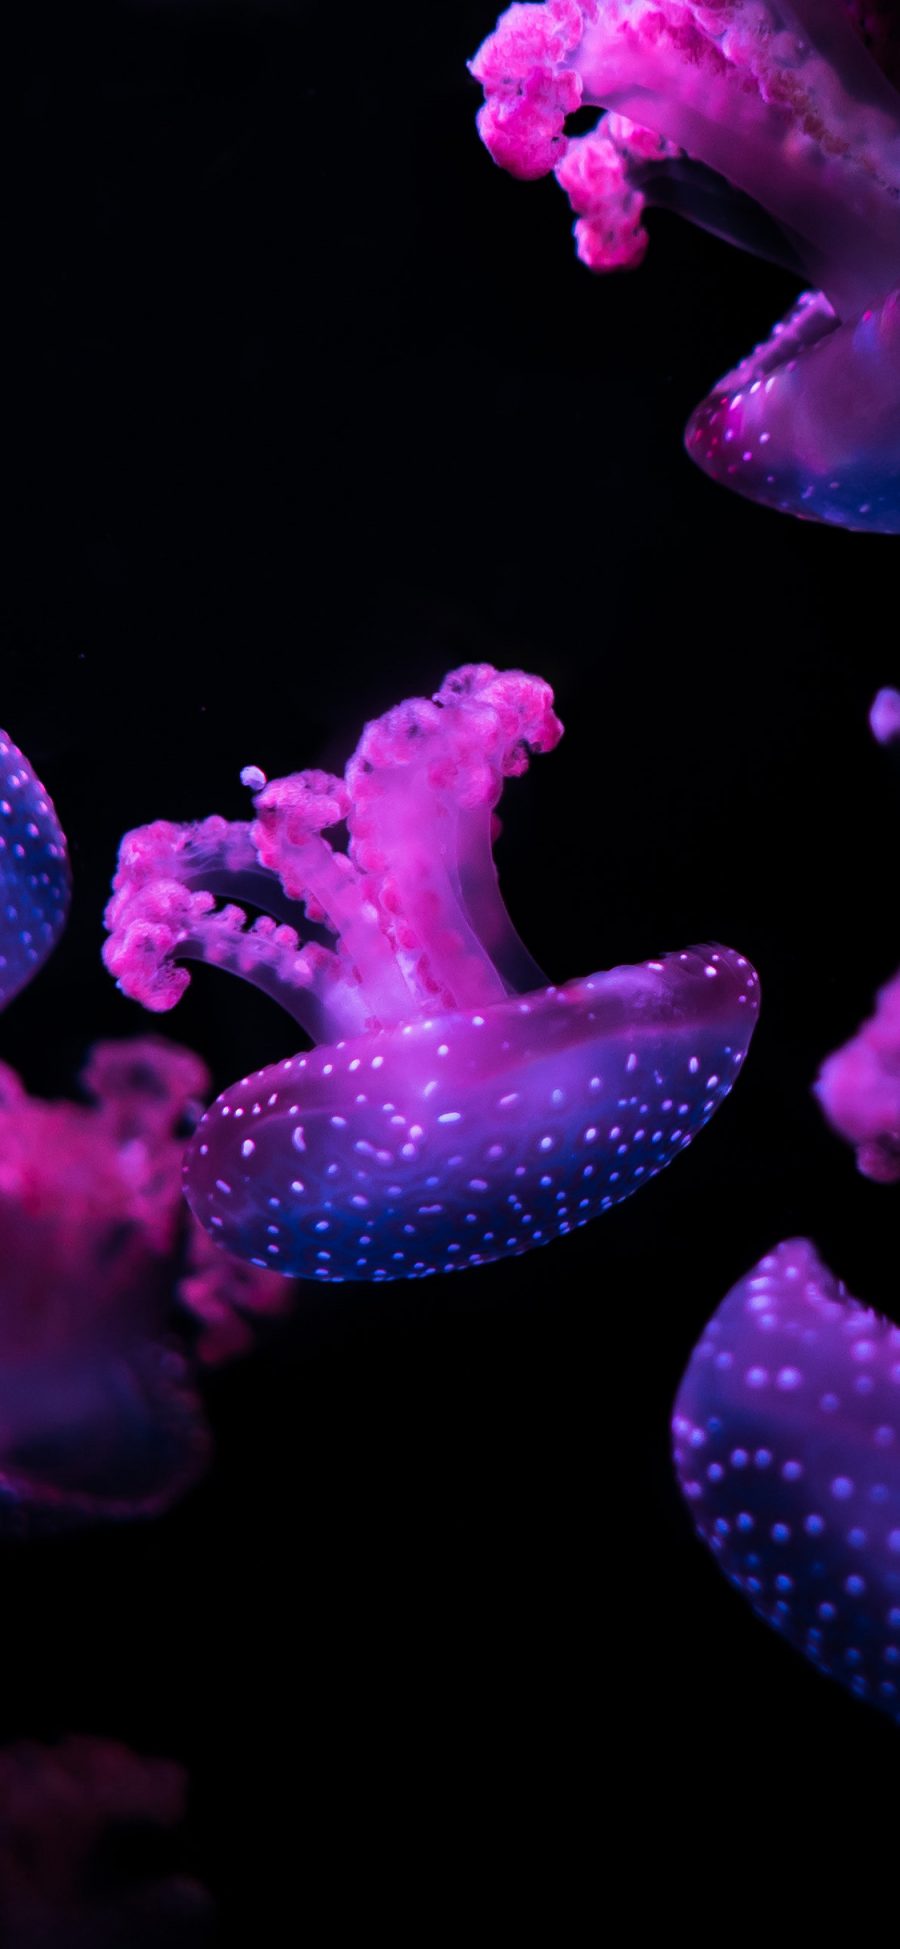 [2436×1125]水母 海洋生物 游动 紫色 黑暗 苹果手机壁纸图片